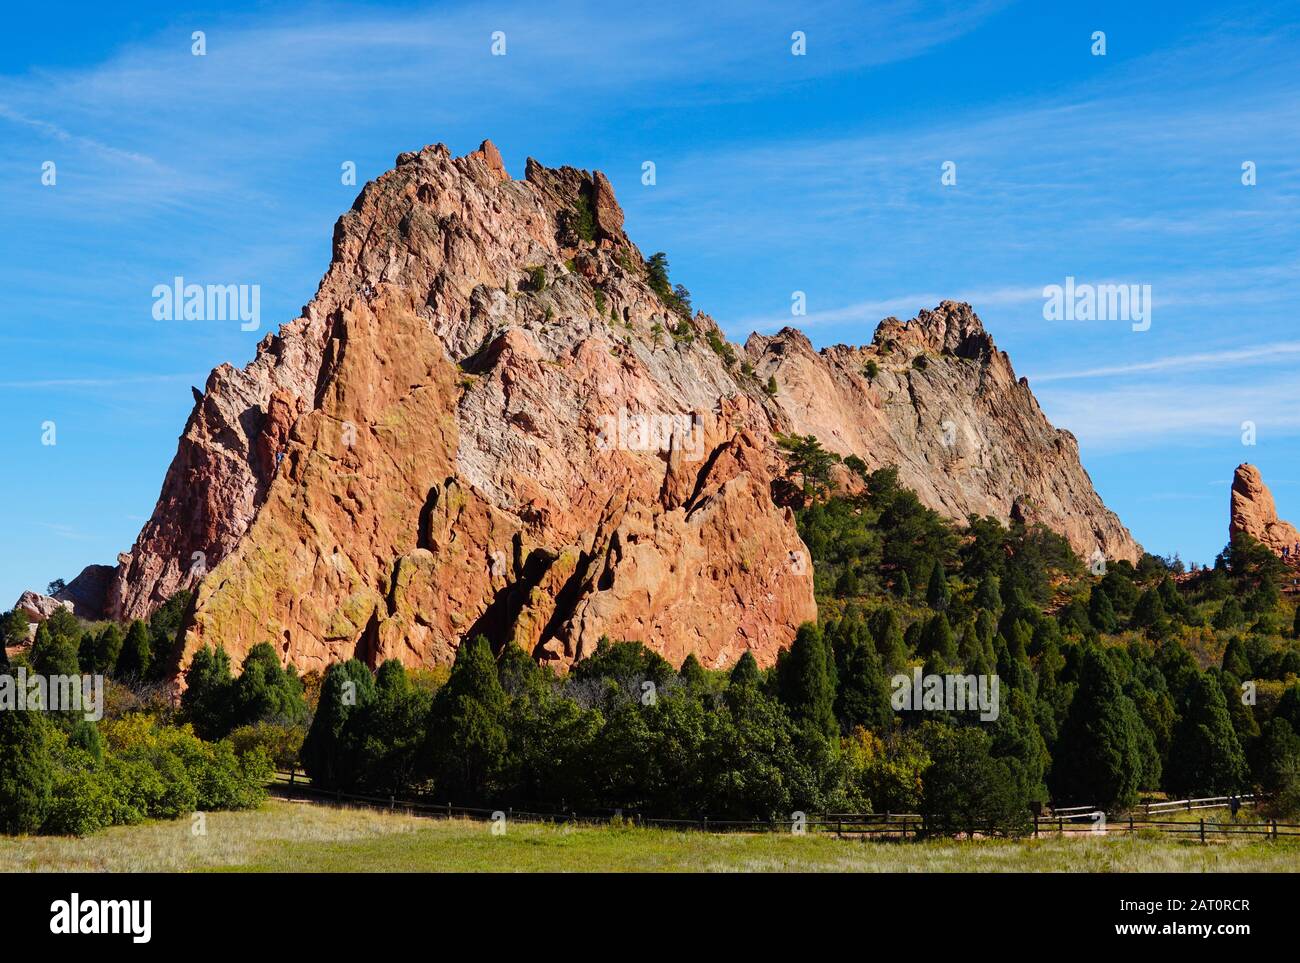 La montagna di arenaria che è la pietra angolare del Giardino Centrale nel Giardino degli dei. Foto Stock